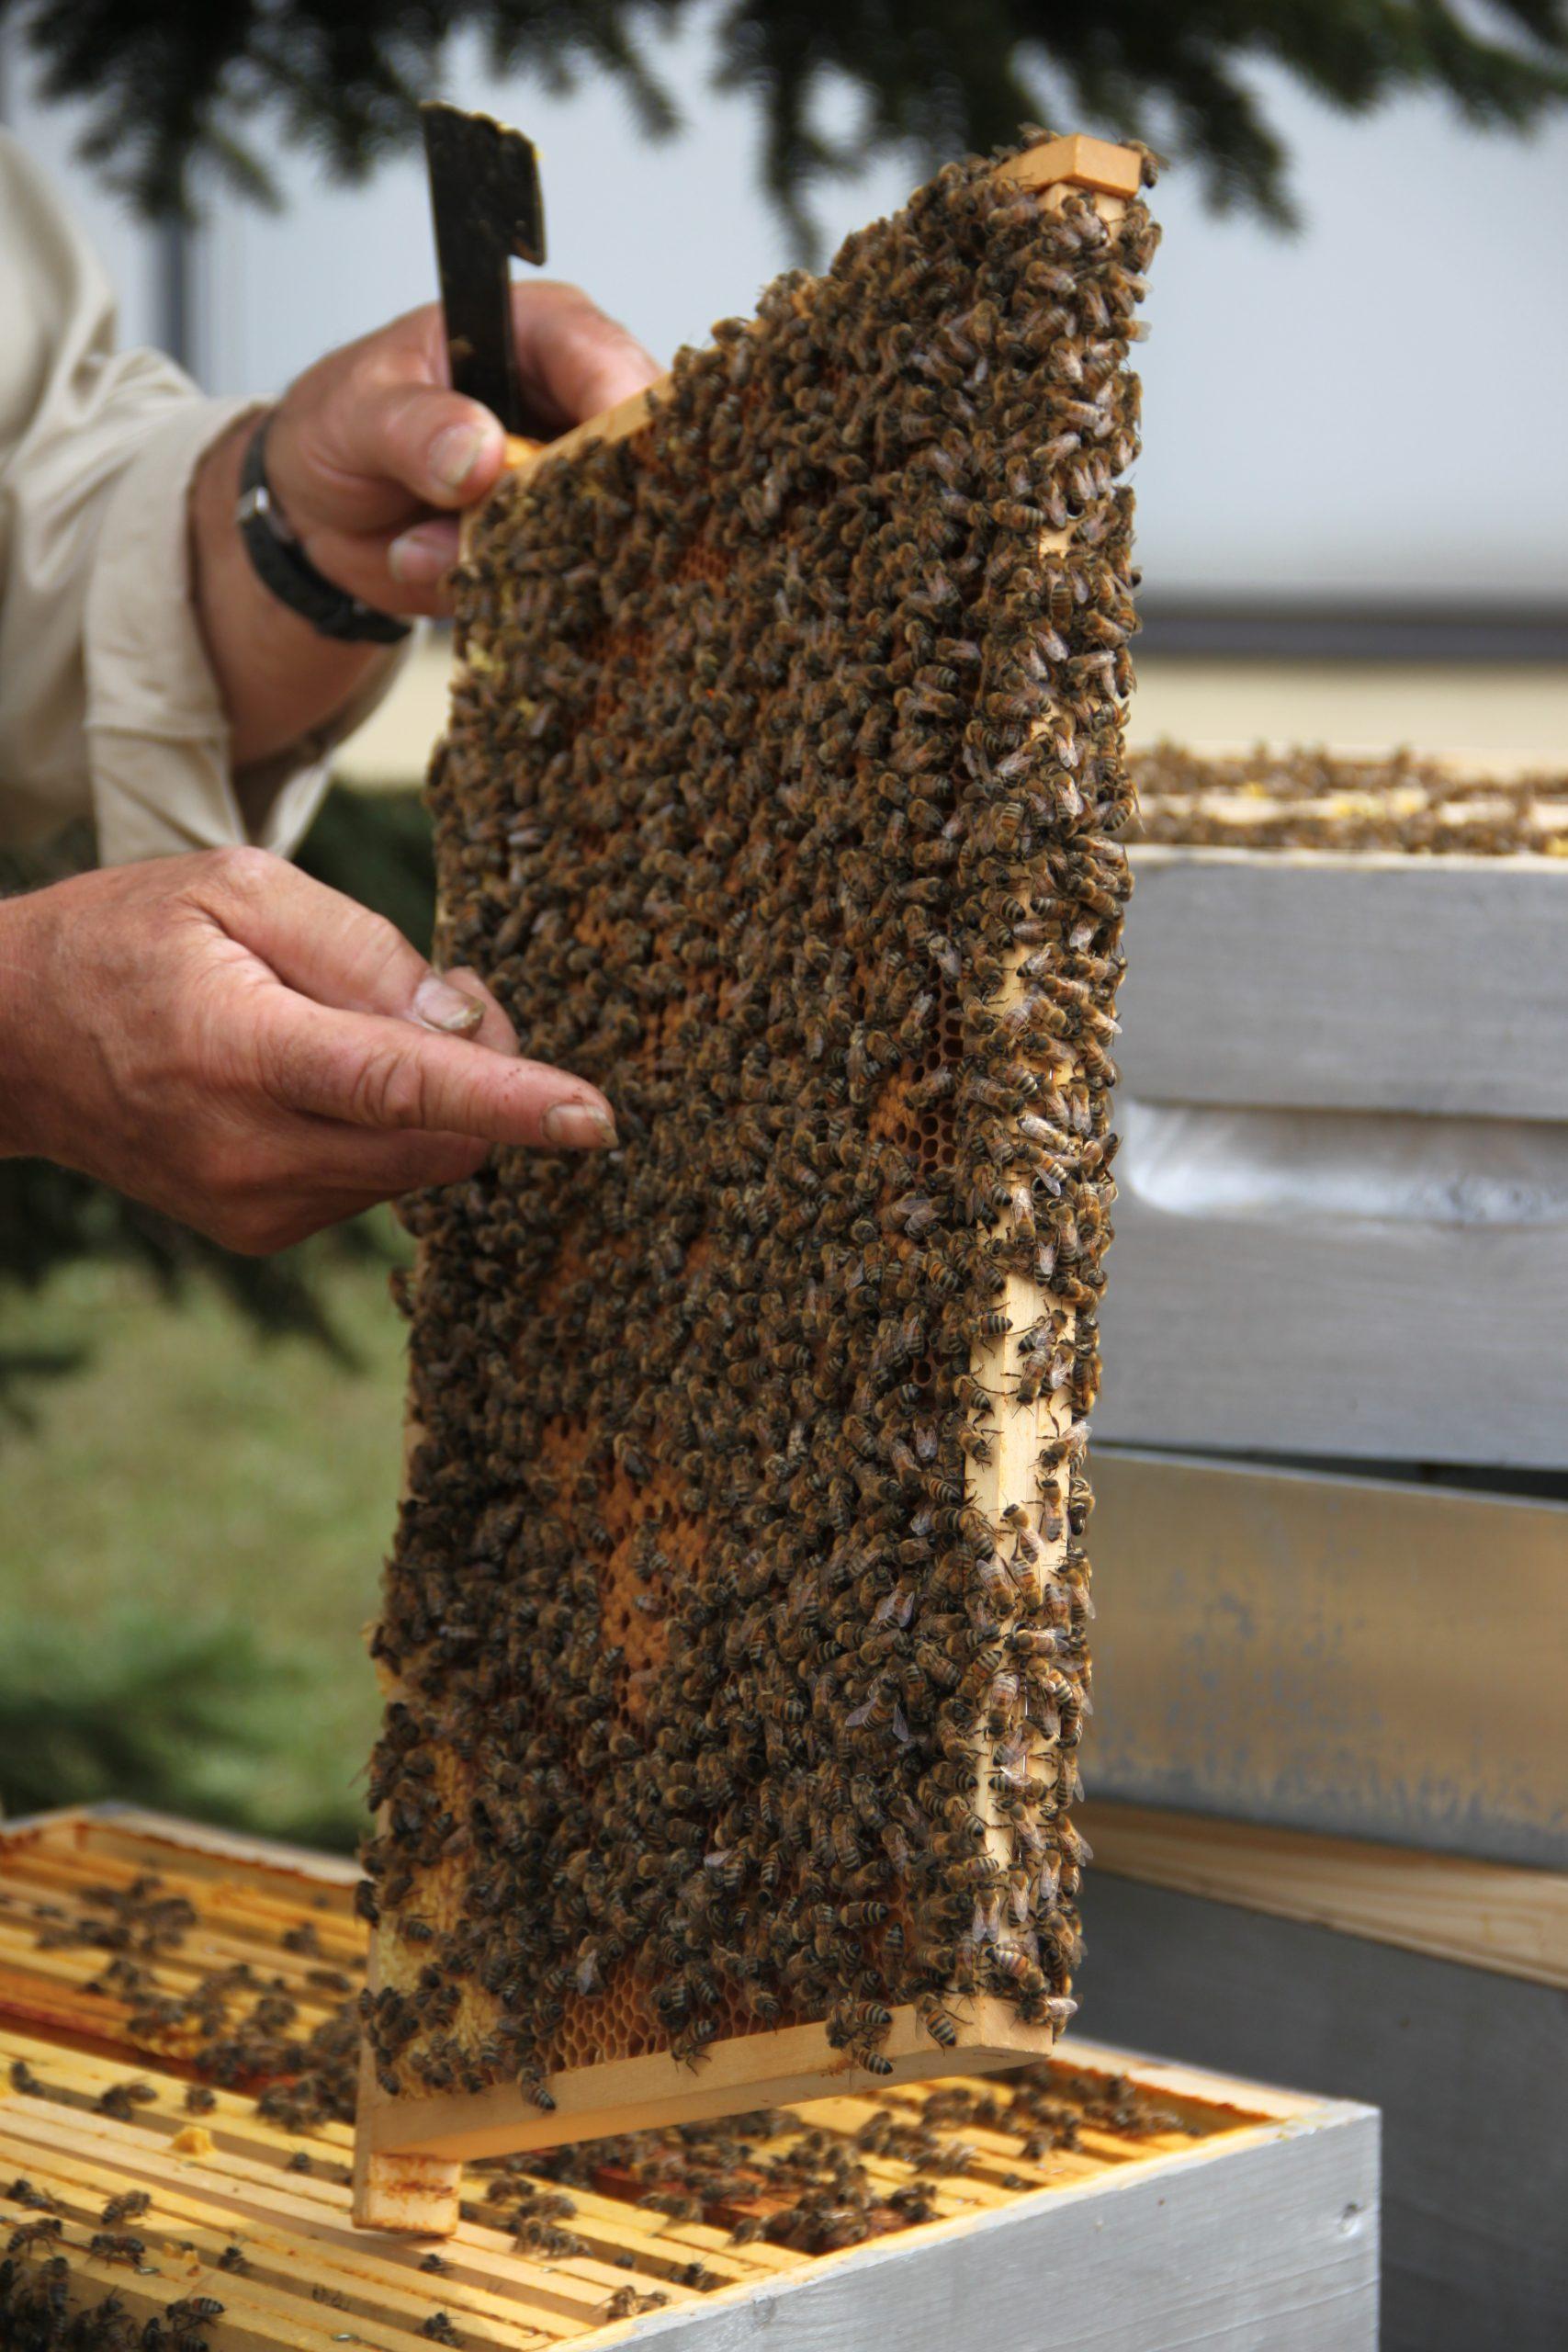 Les abeilles au fil des saisons